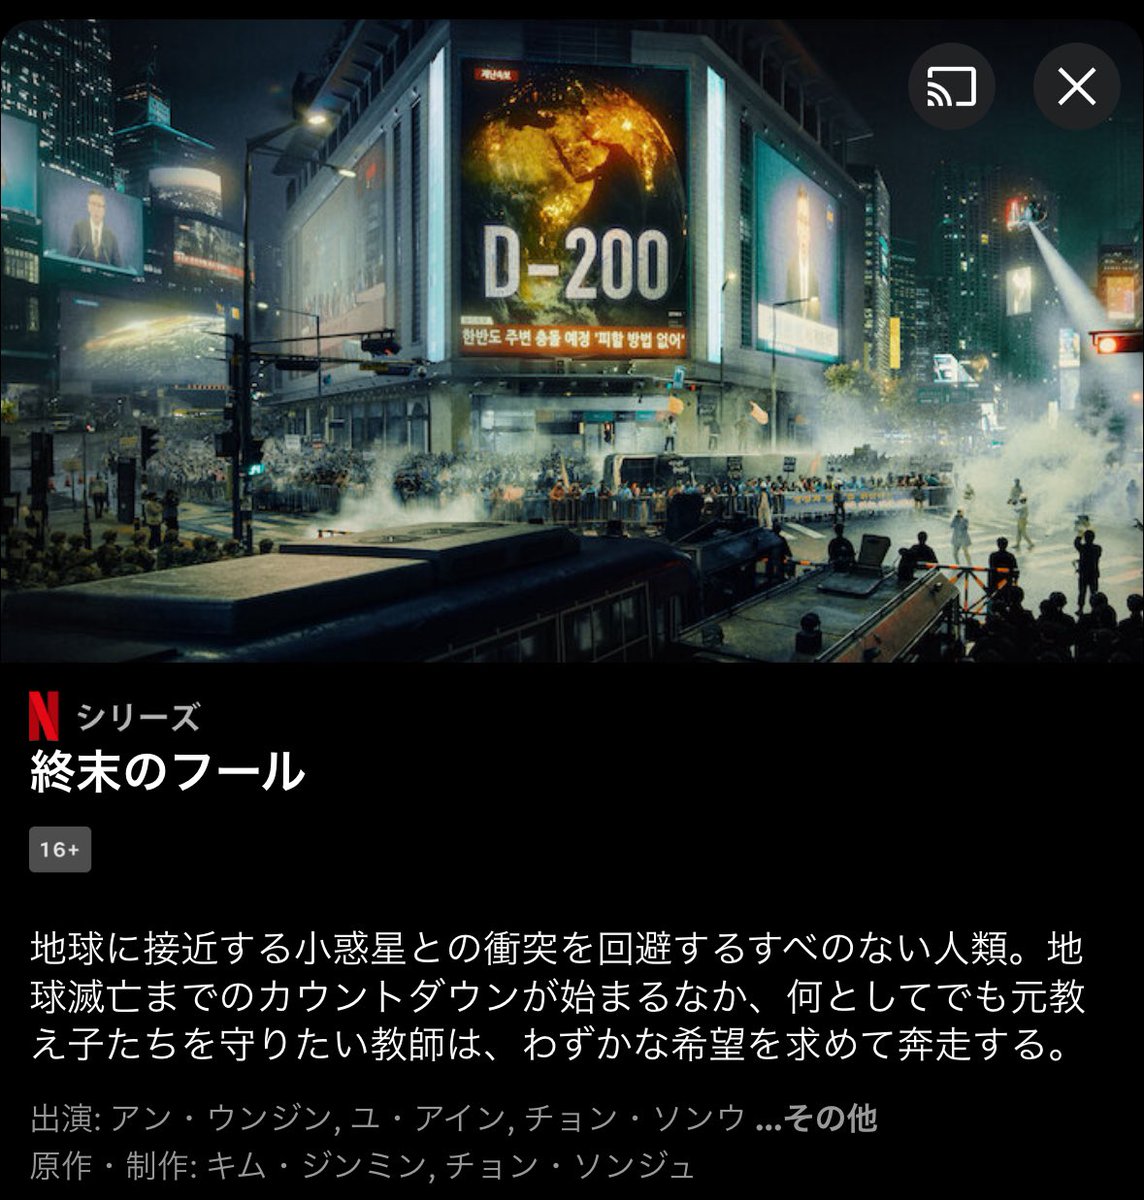 新ドラマ『#終末のフール』のポスターが。
伊坂幸太郎氏の同名小説を脚色、監督は『人間レッスン』『マイネーム 』の監督とのこと。
news.kstyle.com/m/article.ksn?…